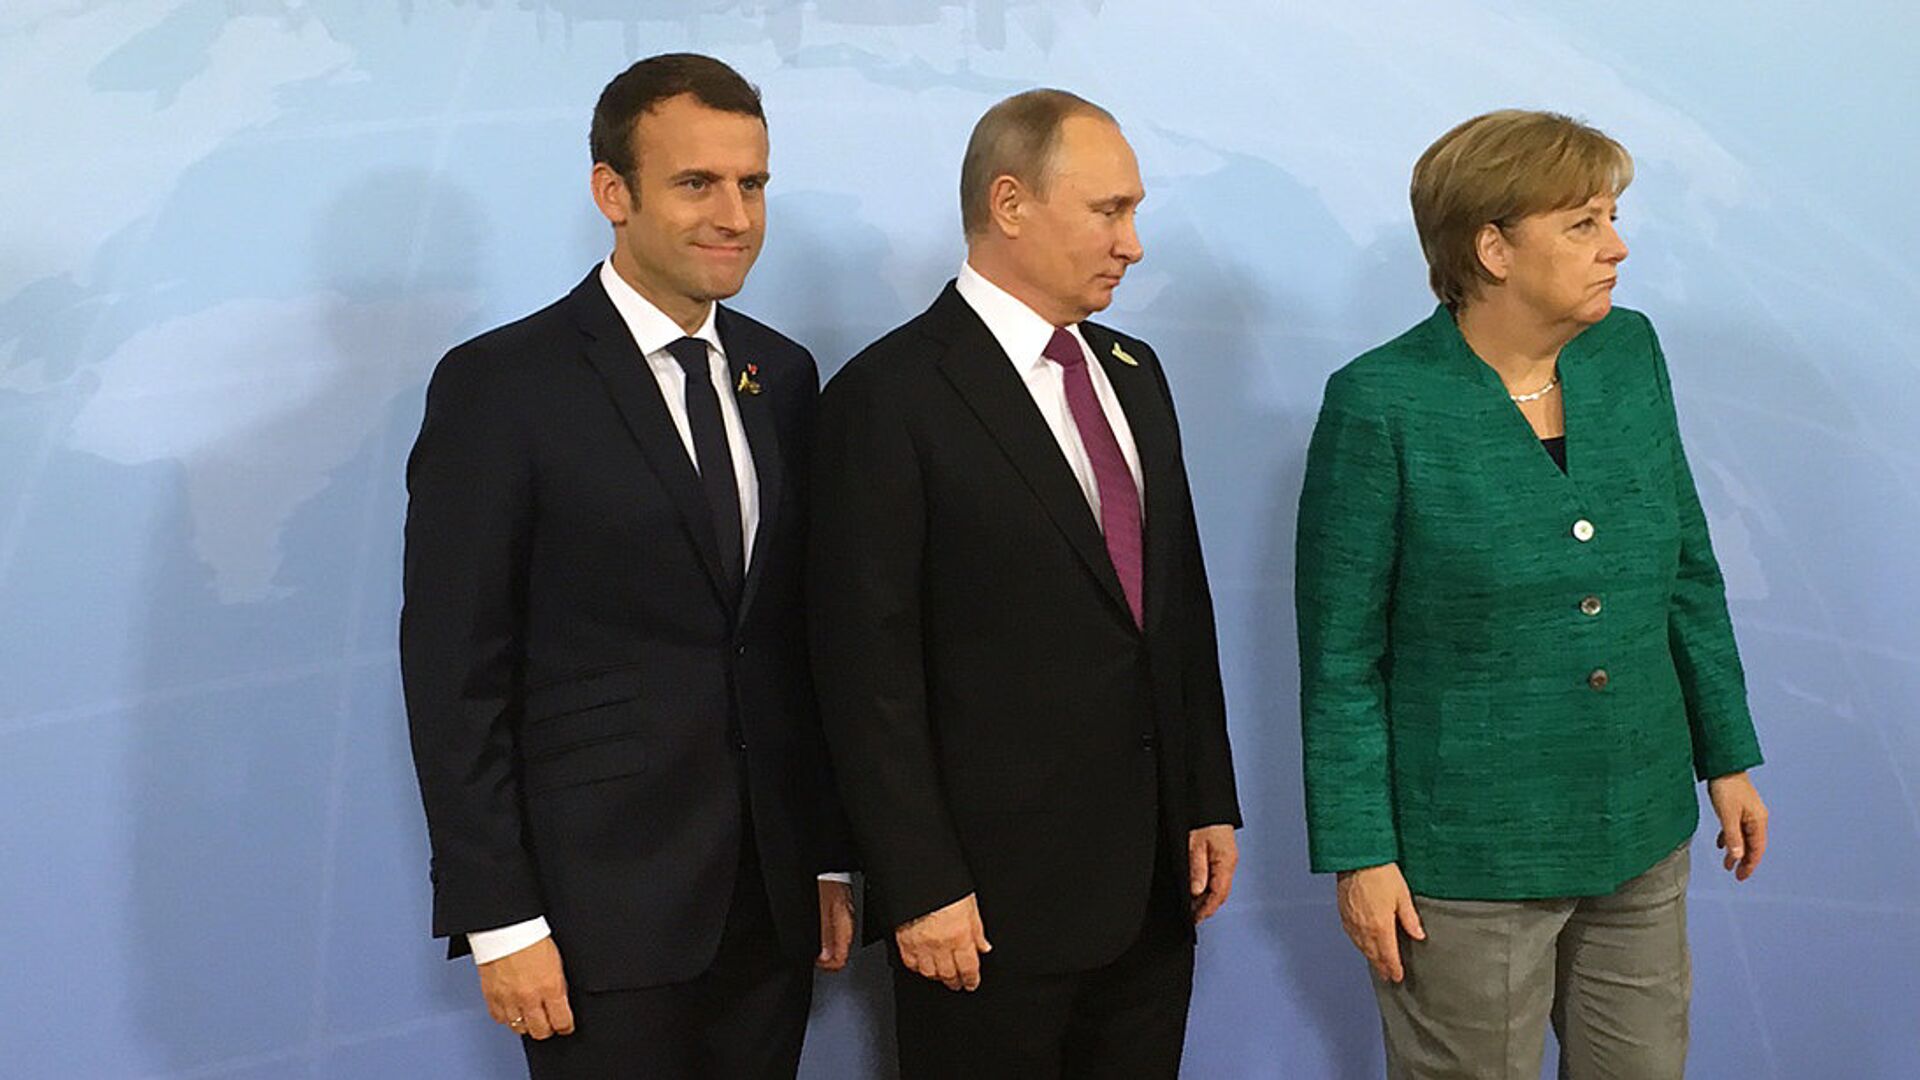 Президент России Владимир Путин, канцлер ФРГ Ангела Меркель и президент Франции Эммануэль Макрон во время встречи на саммите G20 в Гамбурге. 8 июля 2017 - ИноСМИ, 1920, 31.03.2021